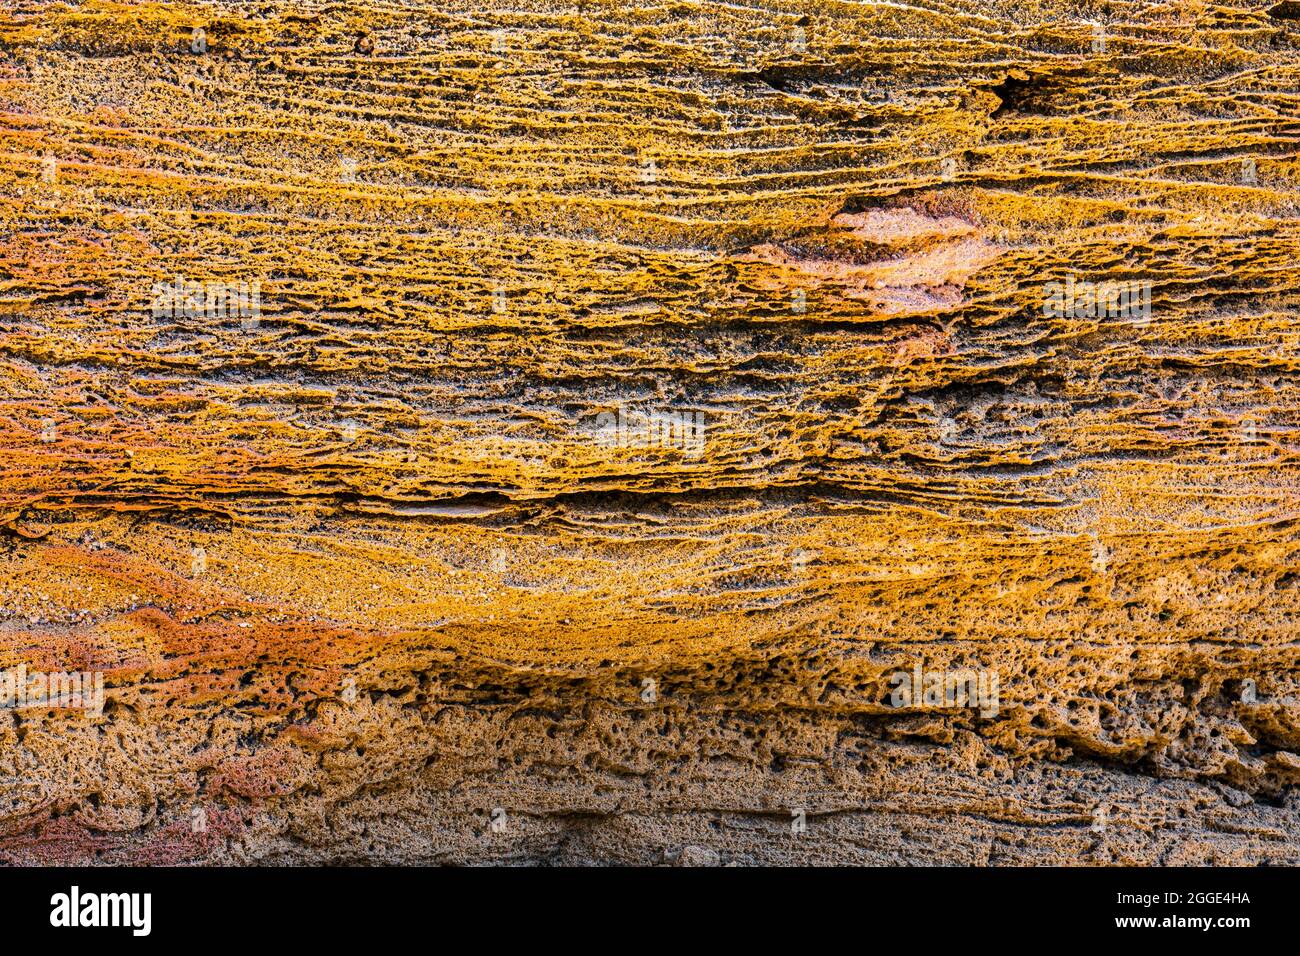 Porous sandstone in Valle della Luna at Capo Testa near Santa Teresa di Gallura, Sardinia, Italy Stock Photo